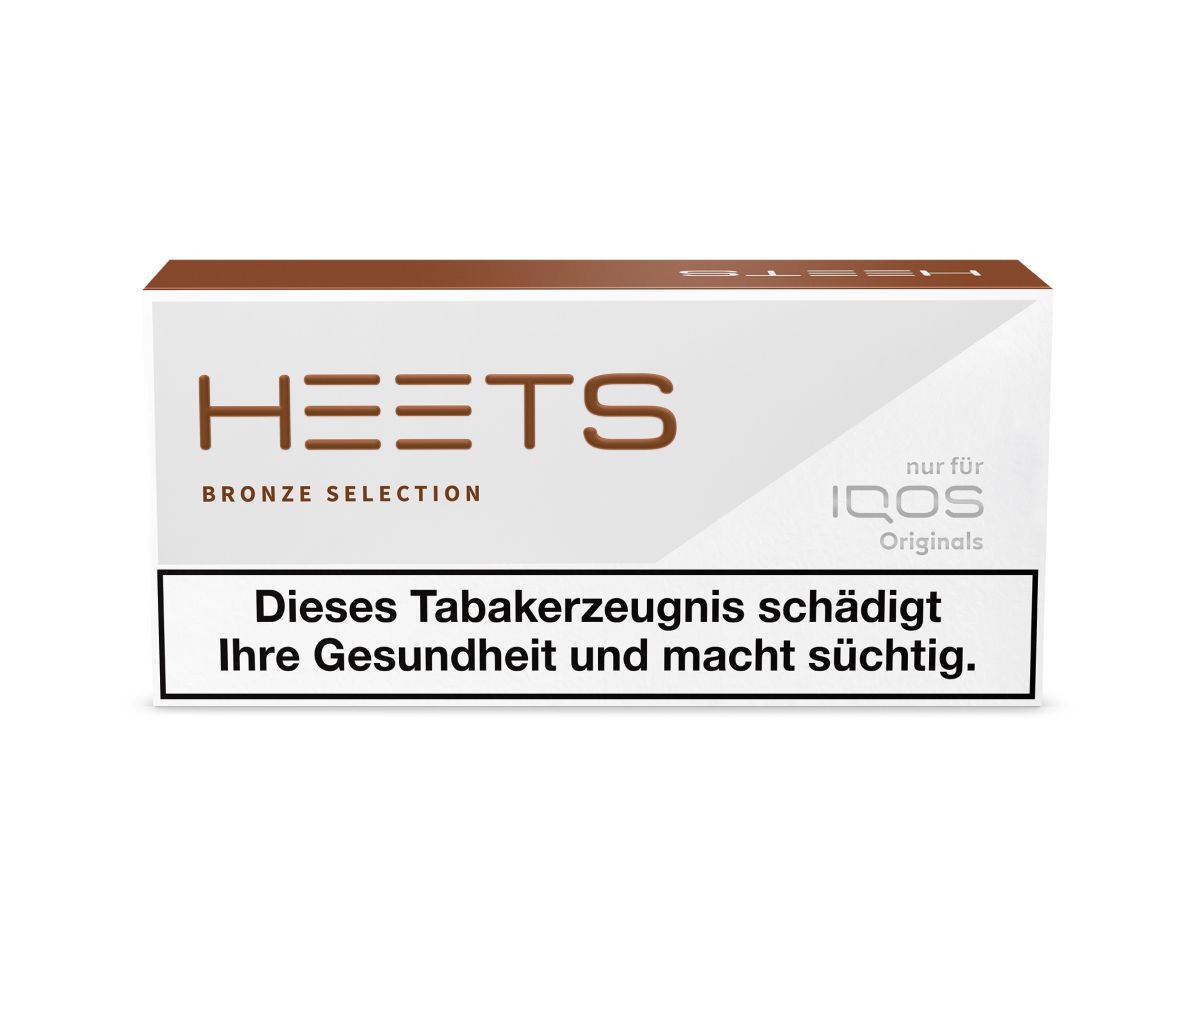 HEETS HEETS IQOS Bronze Selection 6g bei www.Tabakring.de kaufen